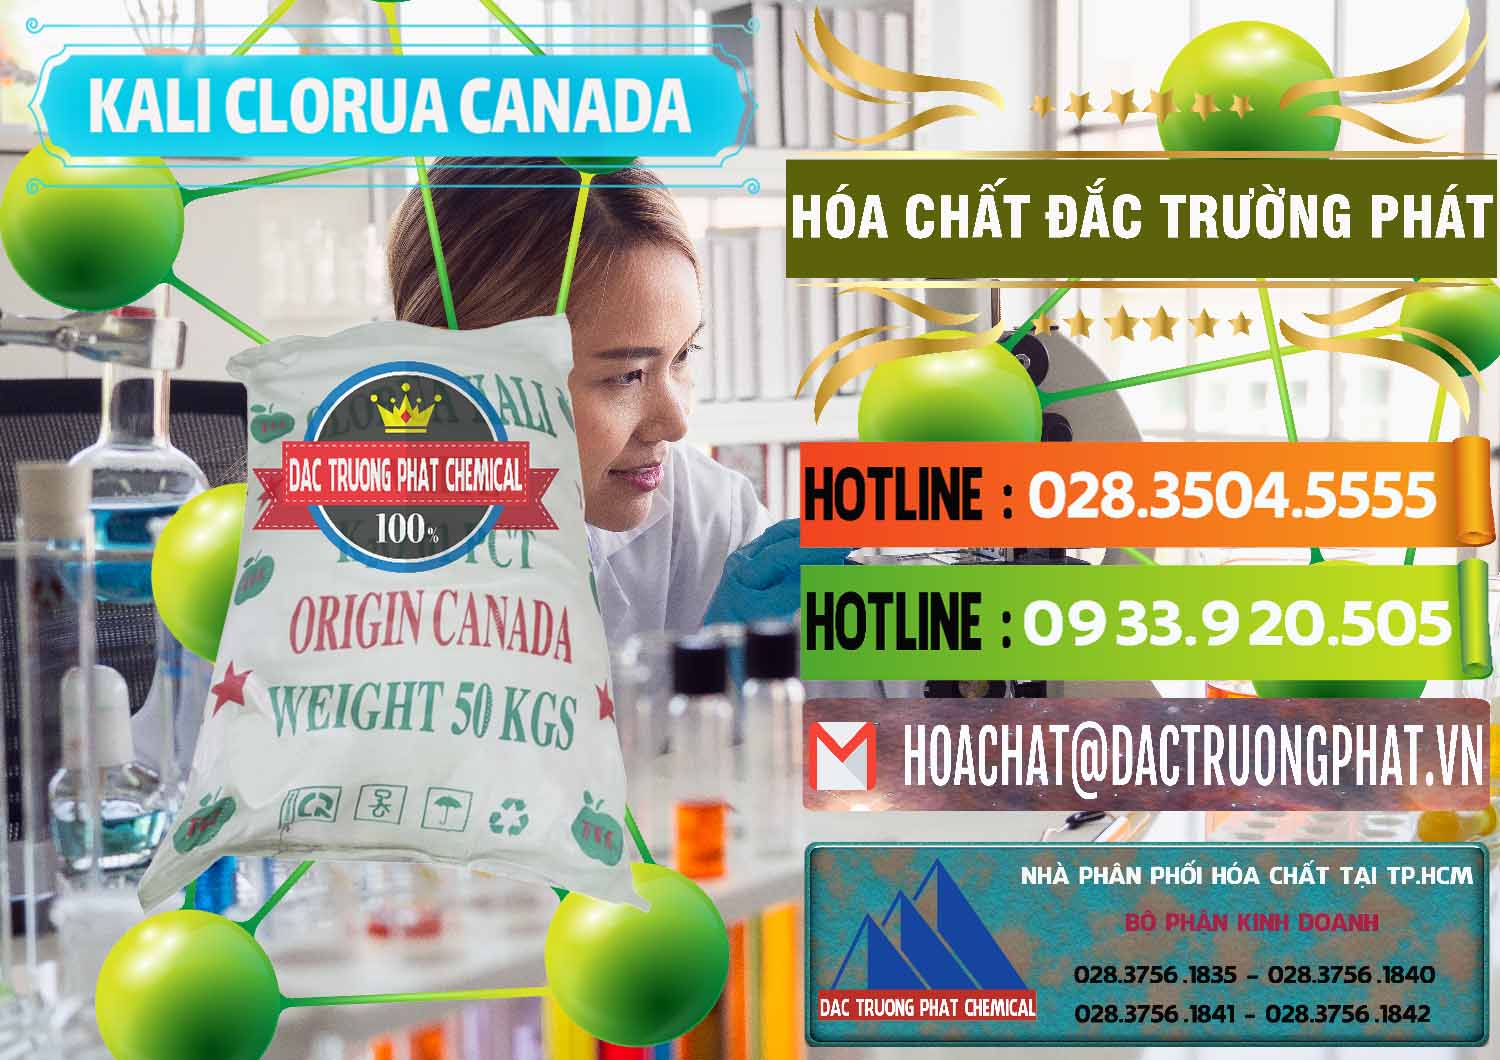 Đơn vị chuyên kinh doanh - bán KCL – Kali Clorua Trắng Canada - 0437 - Nơi chuyên nhập khẩu & phân phối hóa chất tại TP.HCM - cungcaphoachat.com.vn